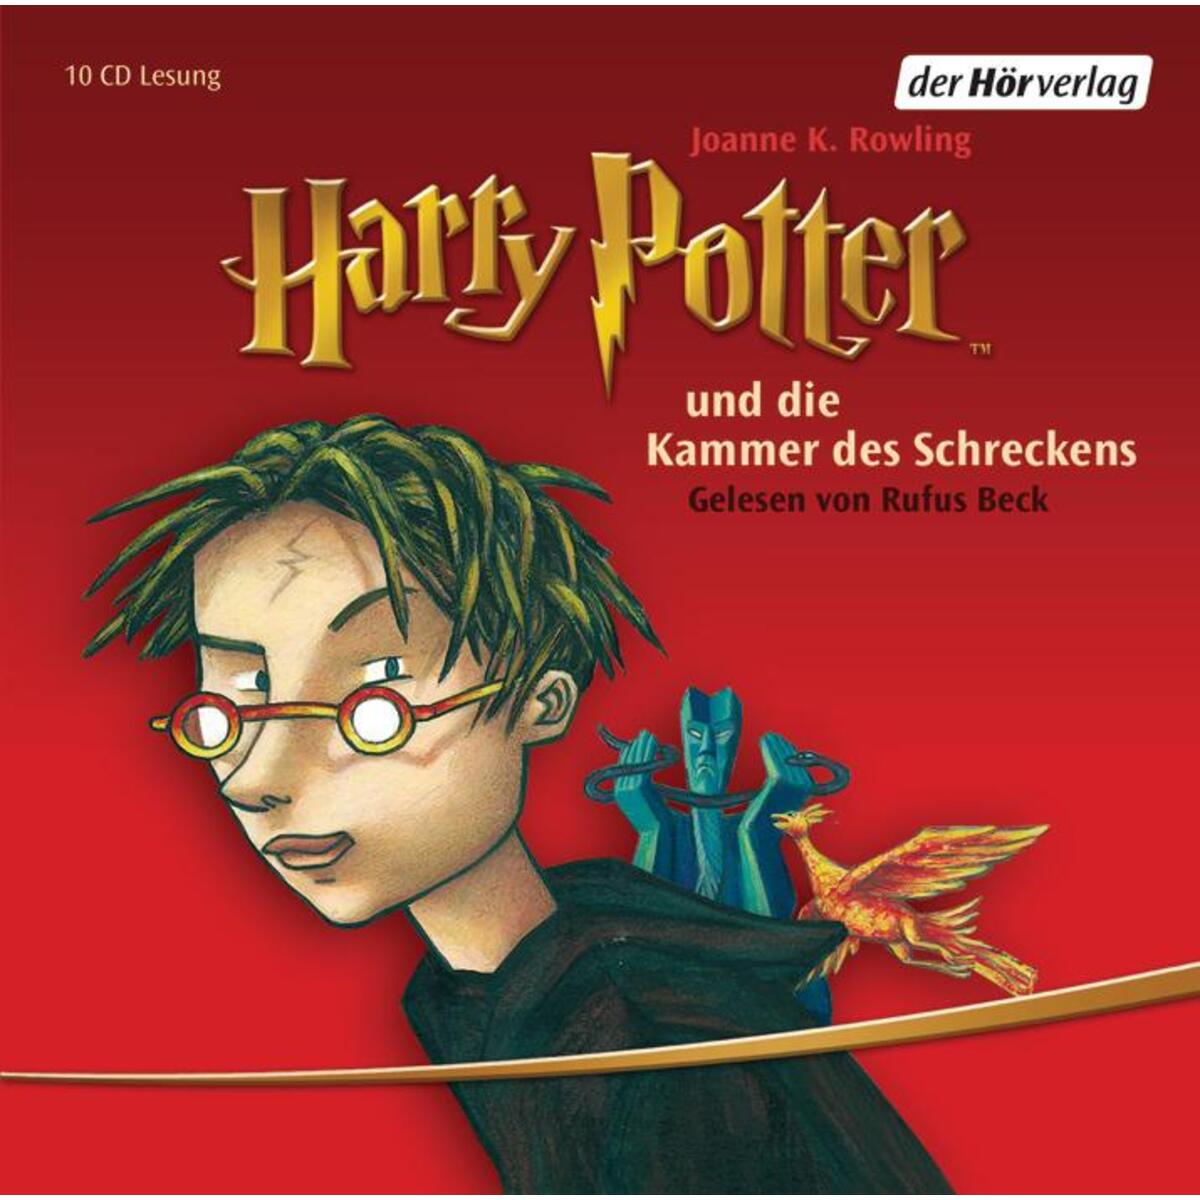 Harry Potter 2 und die Kammer des Schreckens von Hoerverlag DHV Der